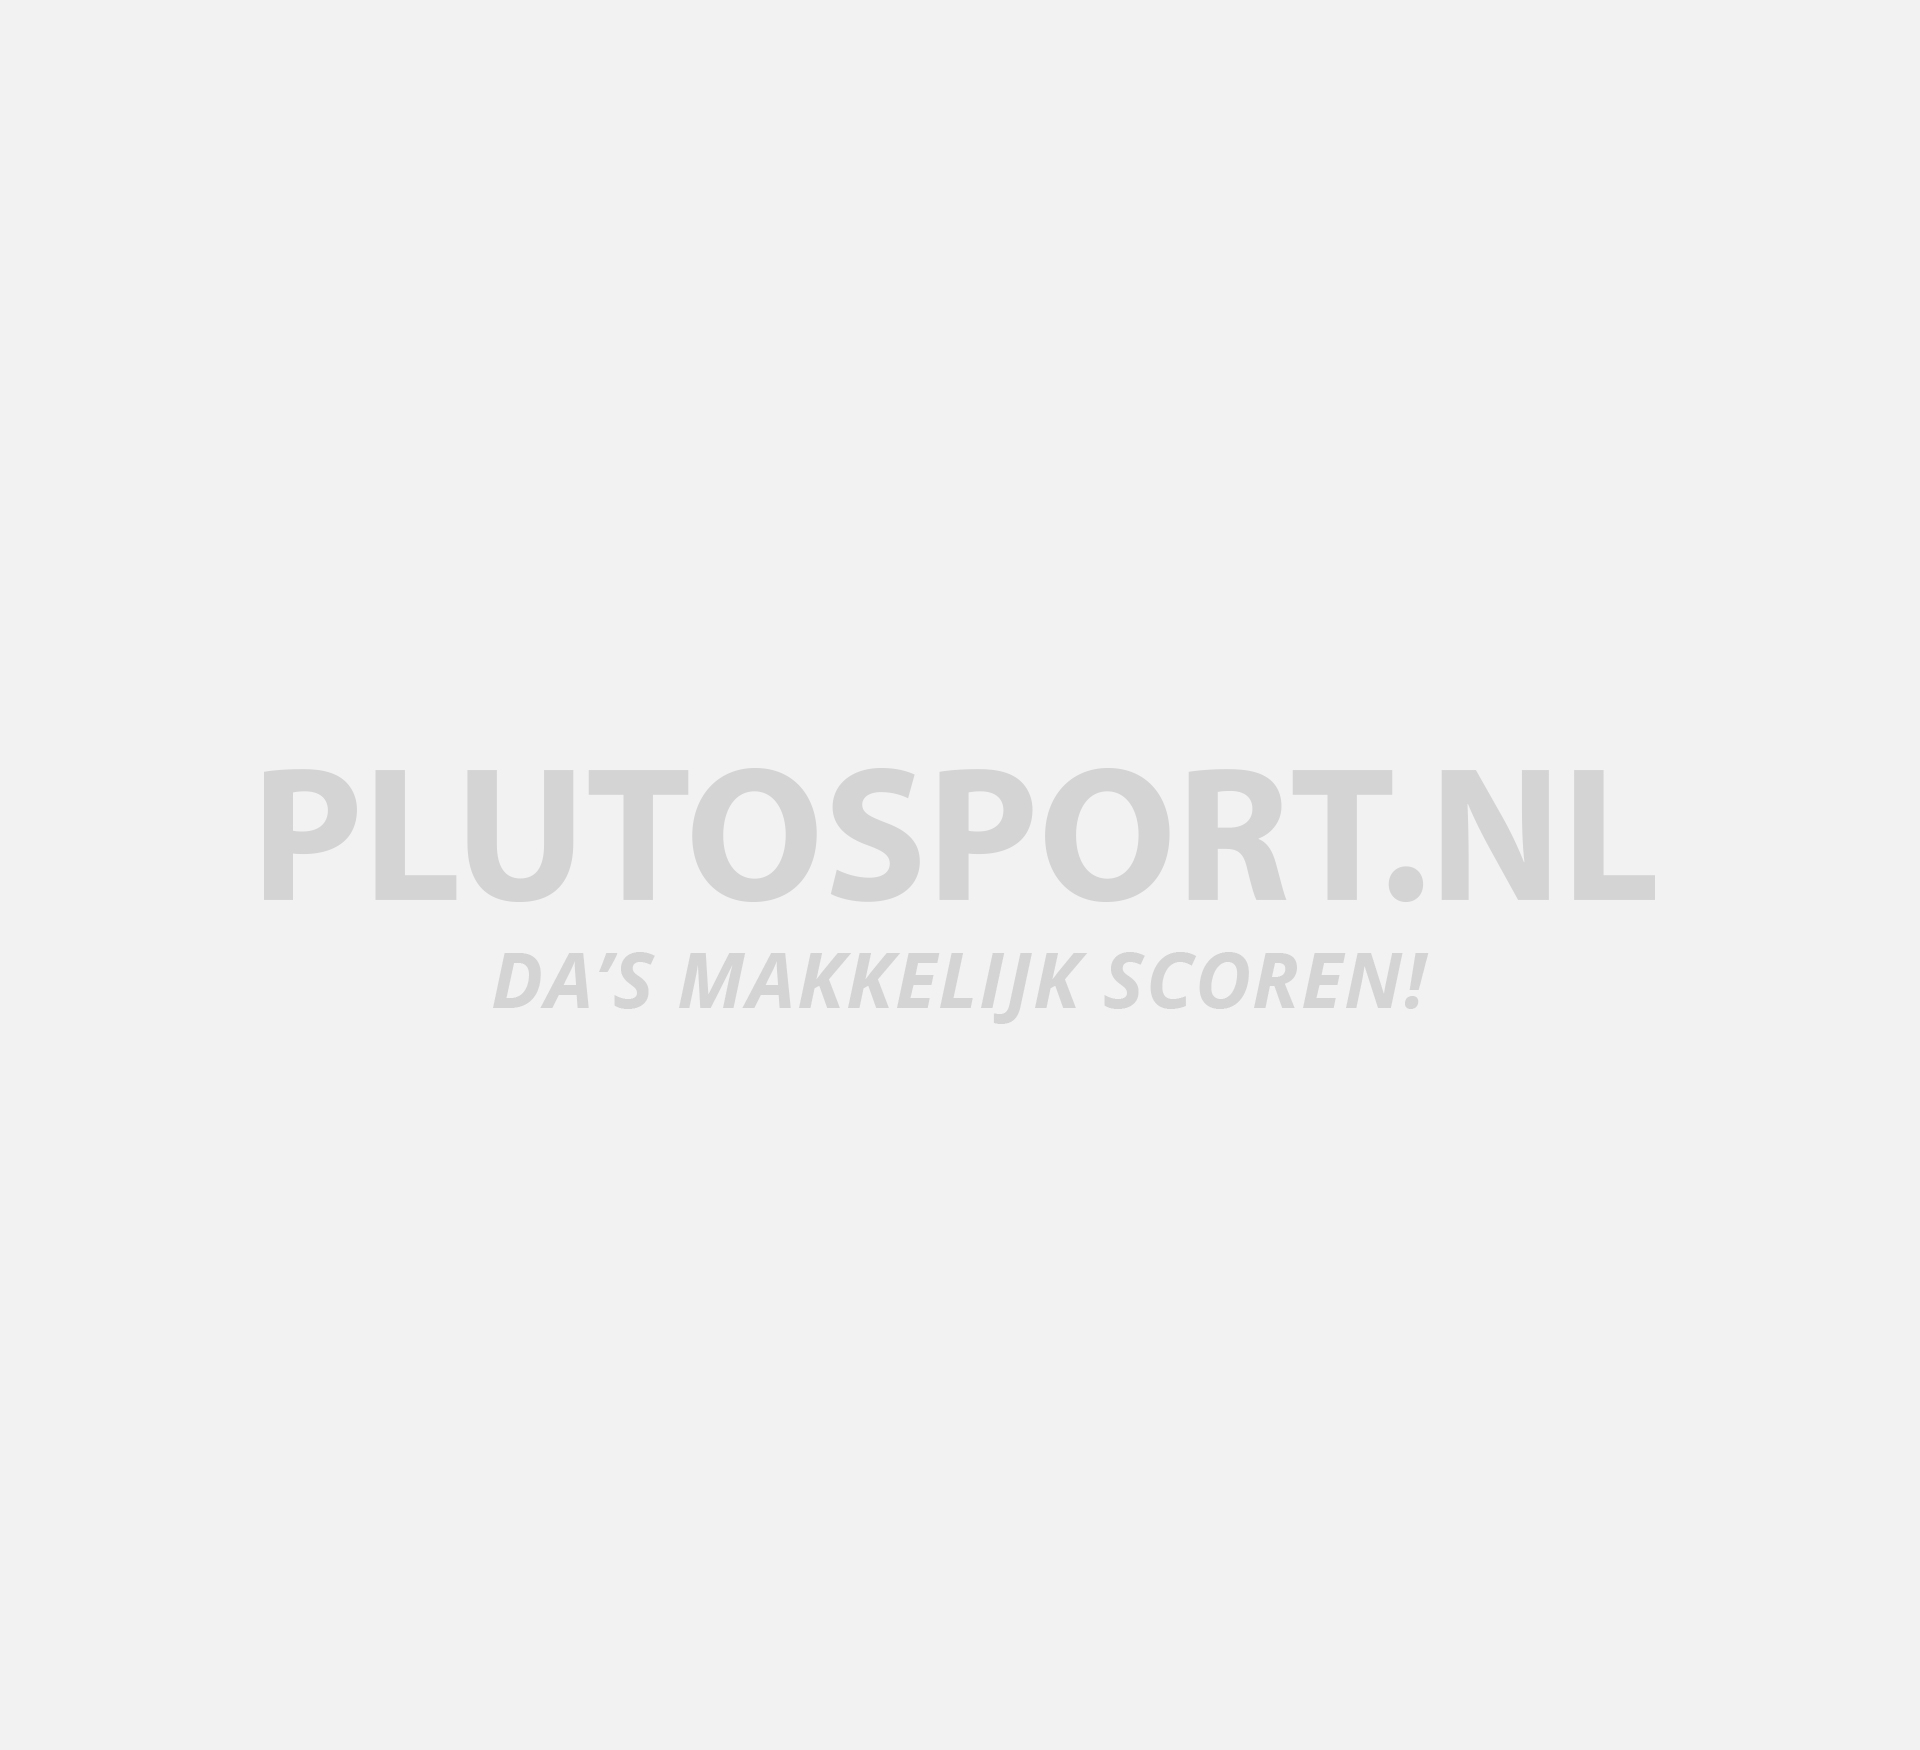 code klok Besmettelijke ziekte Adidas Duramo SL Hardloopschoen Dames | Plutosport